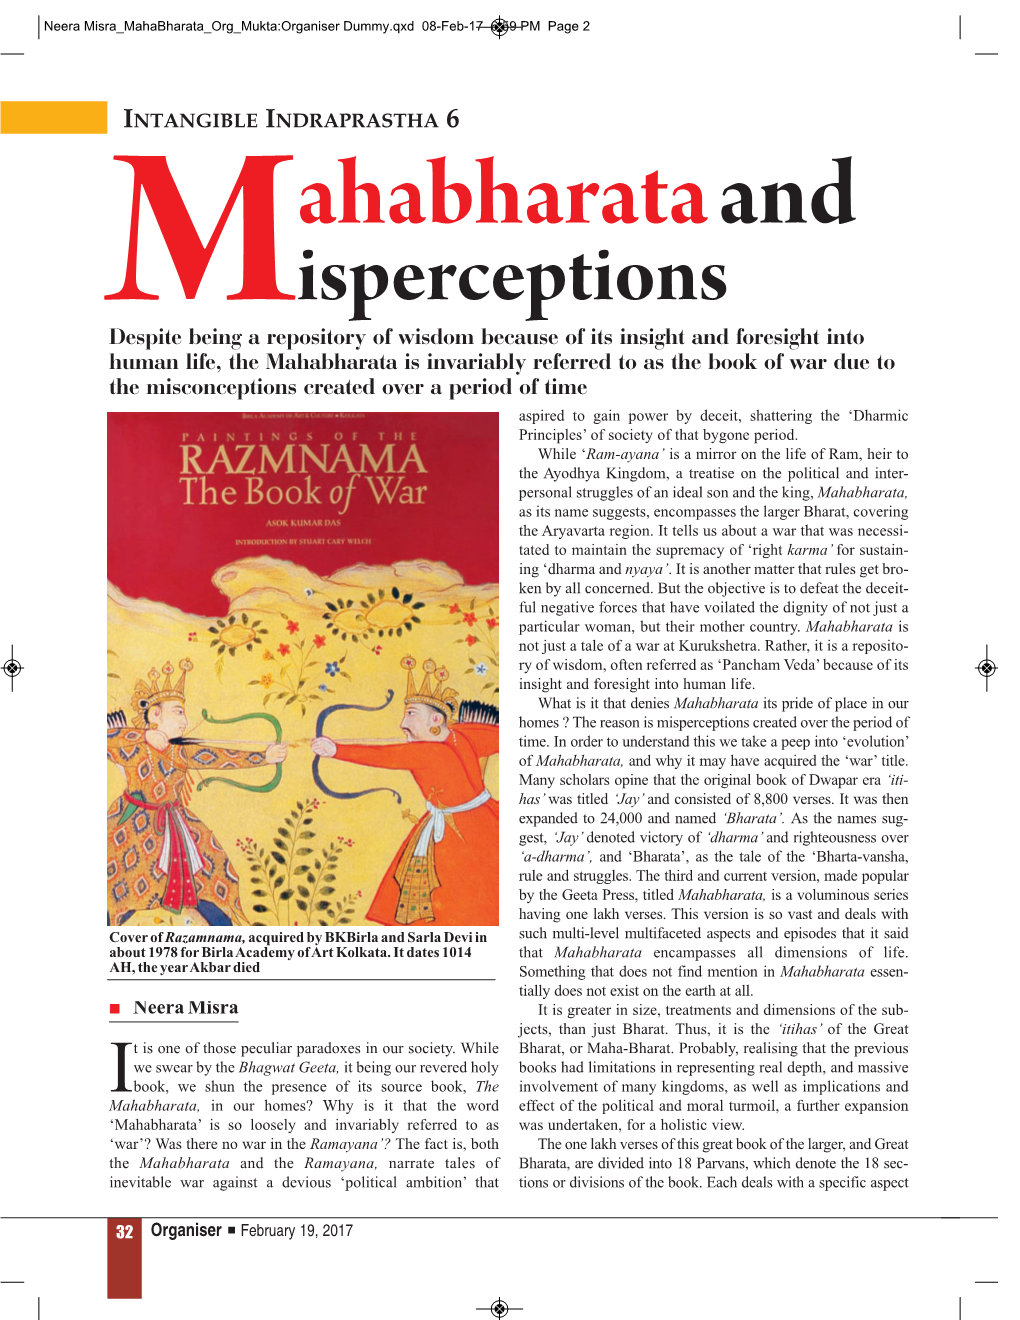 Mahabharata and Misperceptions